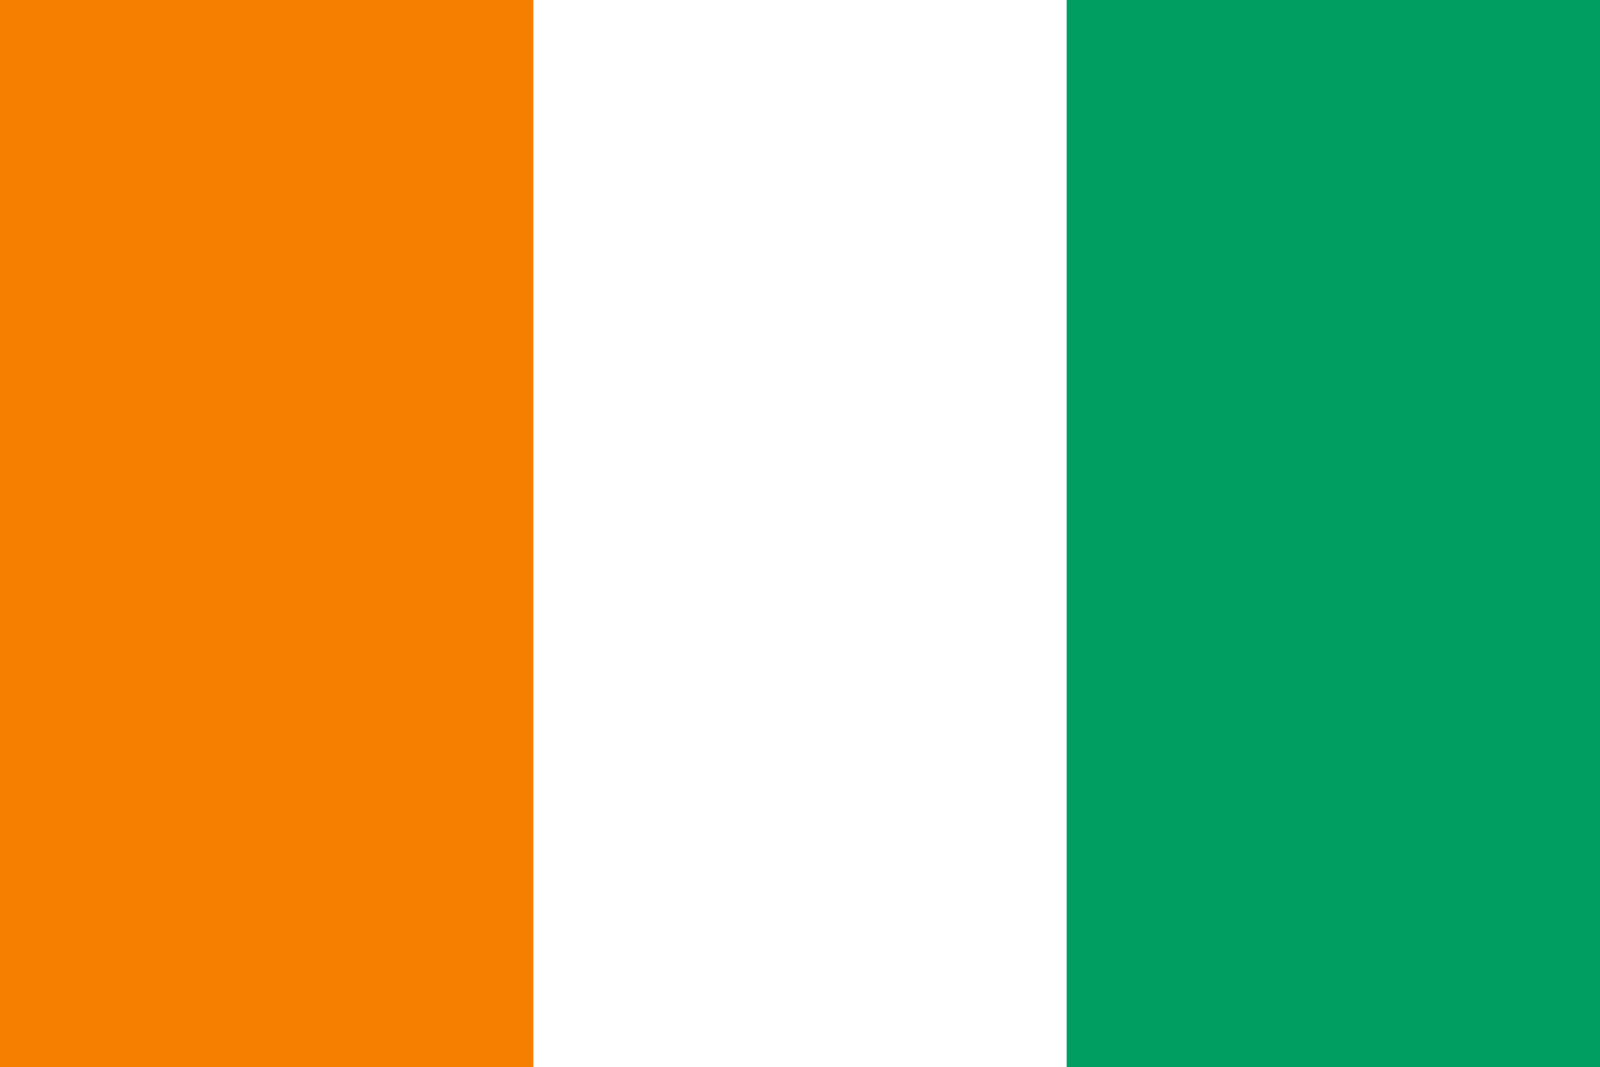 1635Equatorial Guinea Trademark Registration